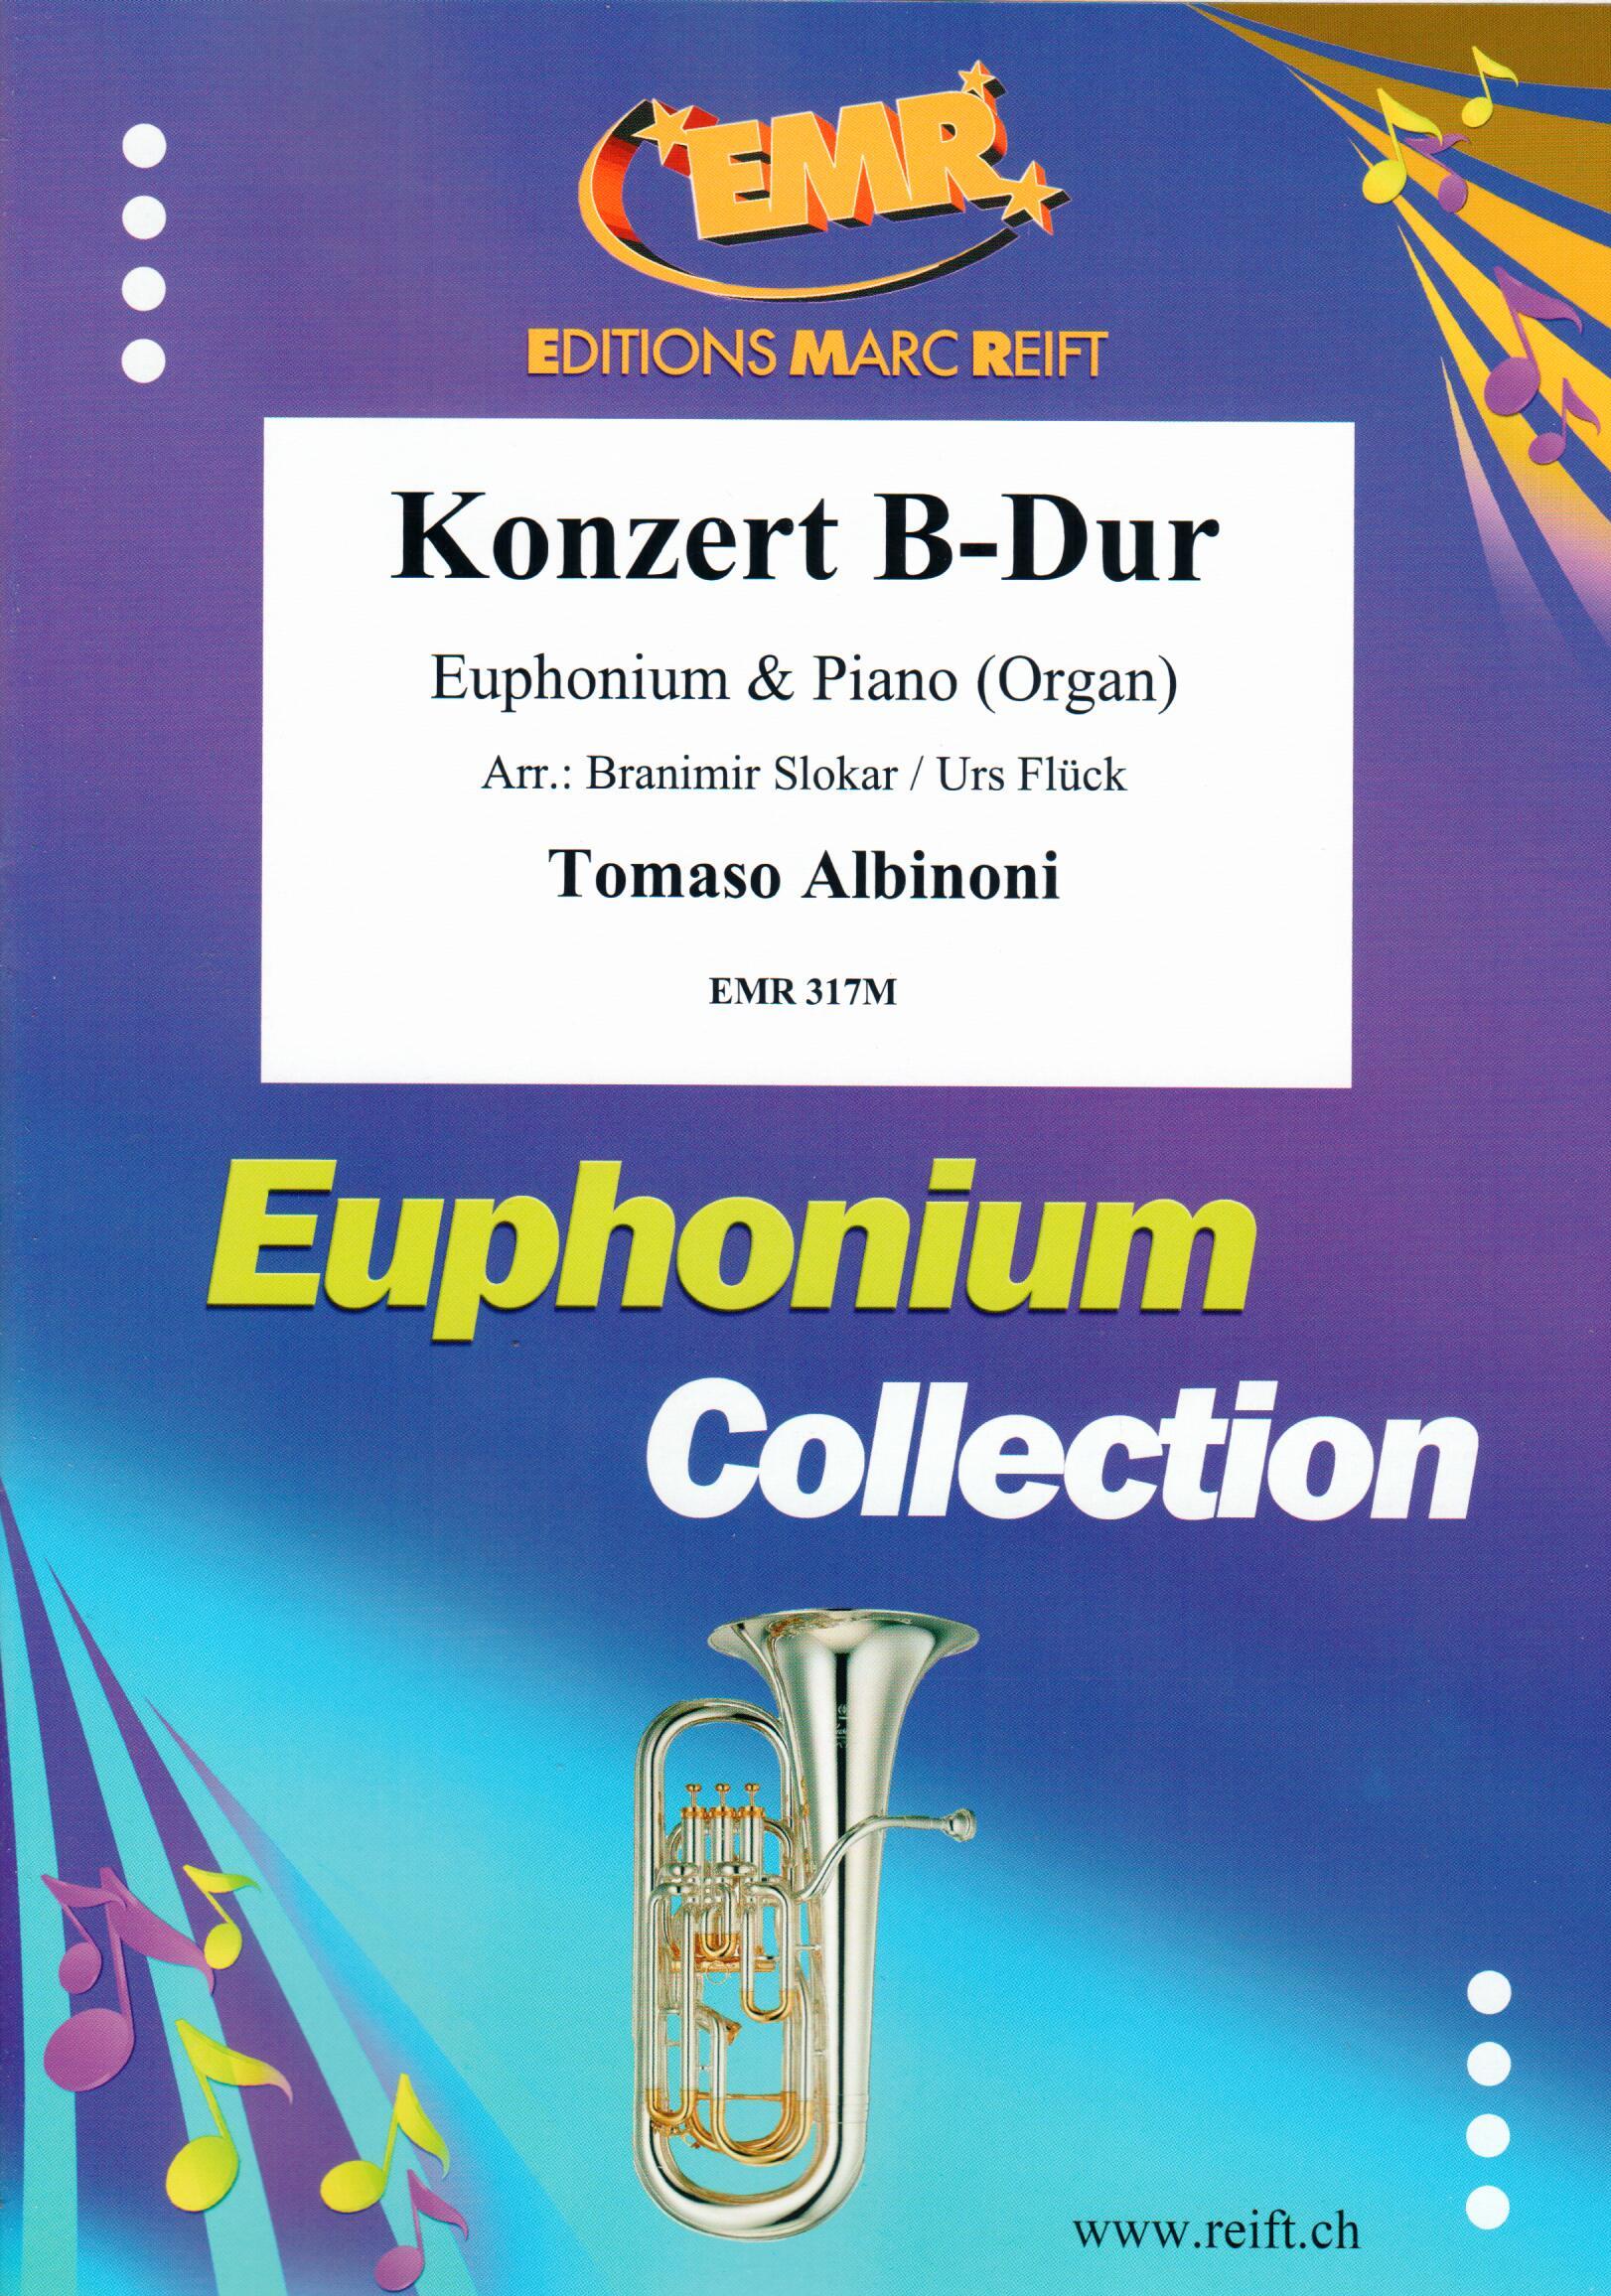 KONZERT B-DUR, SOLOS - Euphonium